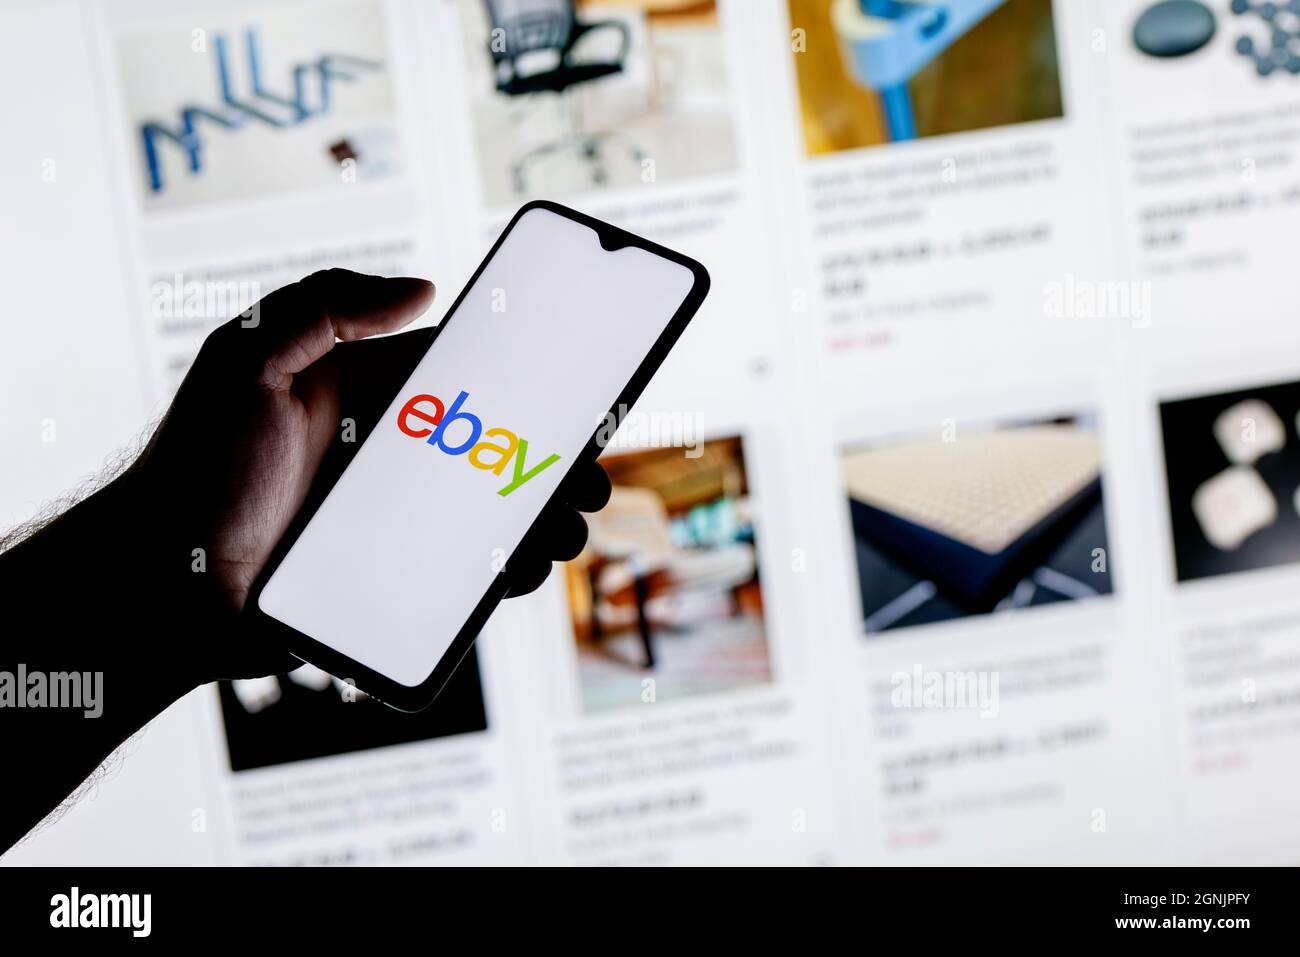 Uno smartphone con il logo eBay in una mano sullo sfondo del catalogo di siti Web. Foto Stock